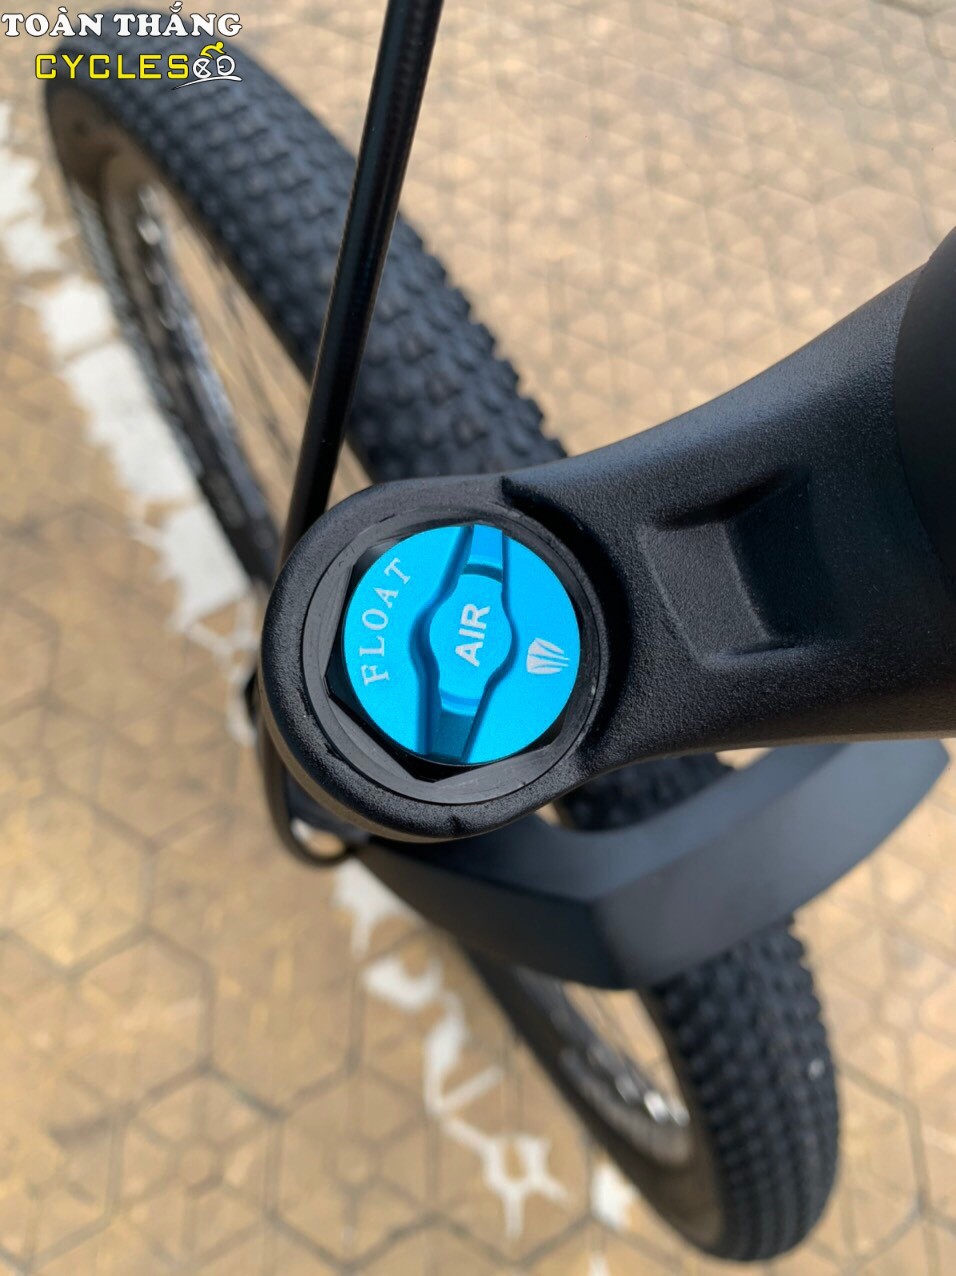 Xe đạp địa hình TRINX X1 27.5 2021  Đen xanh dương